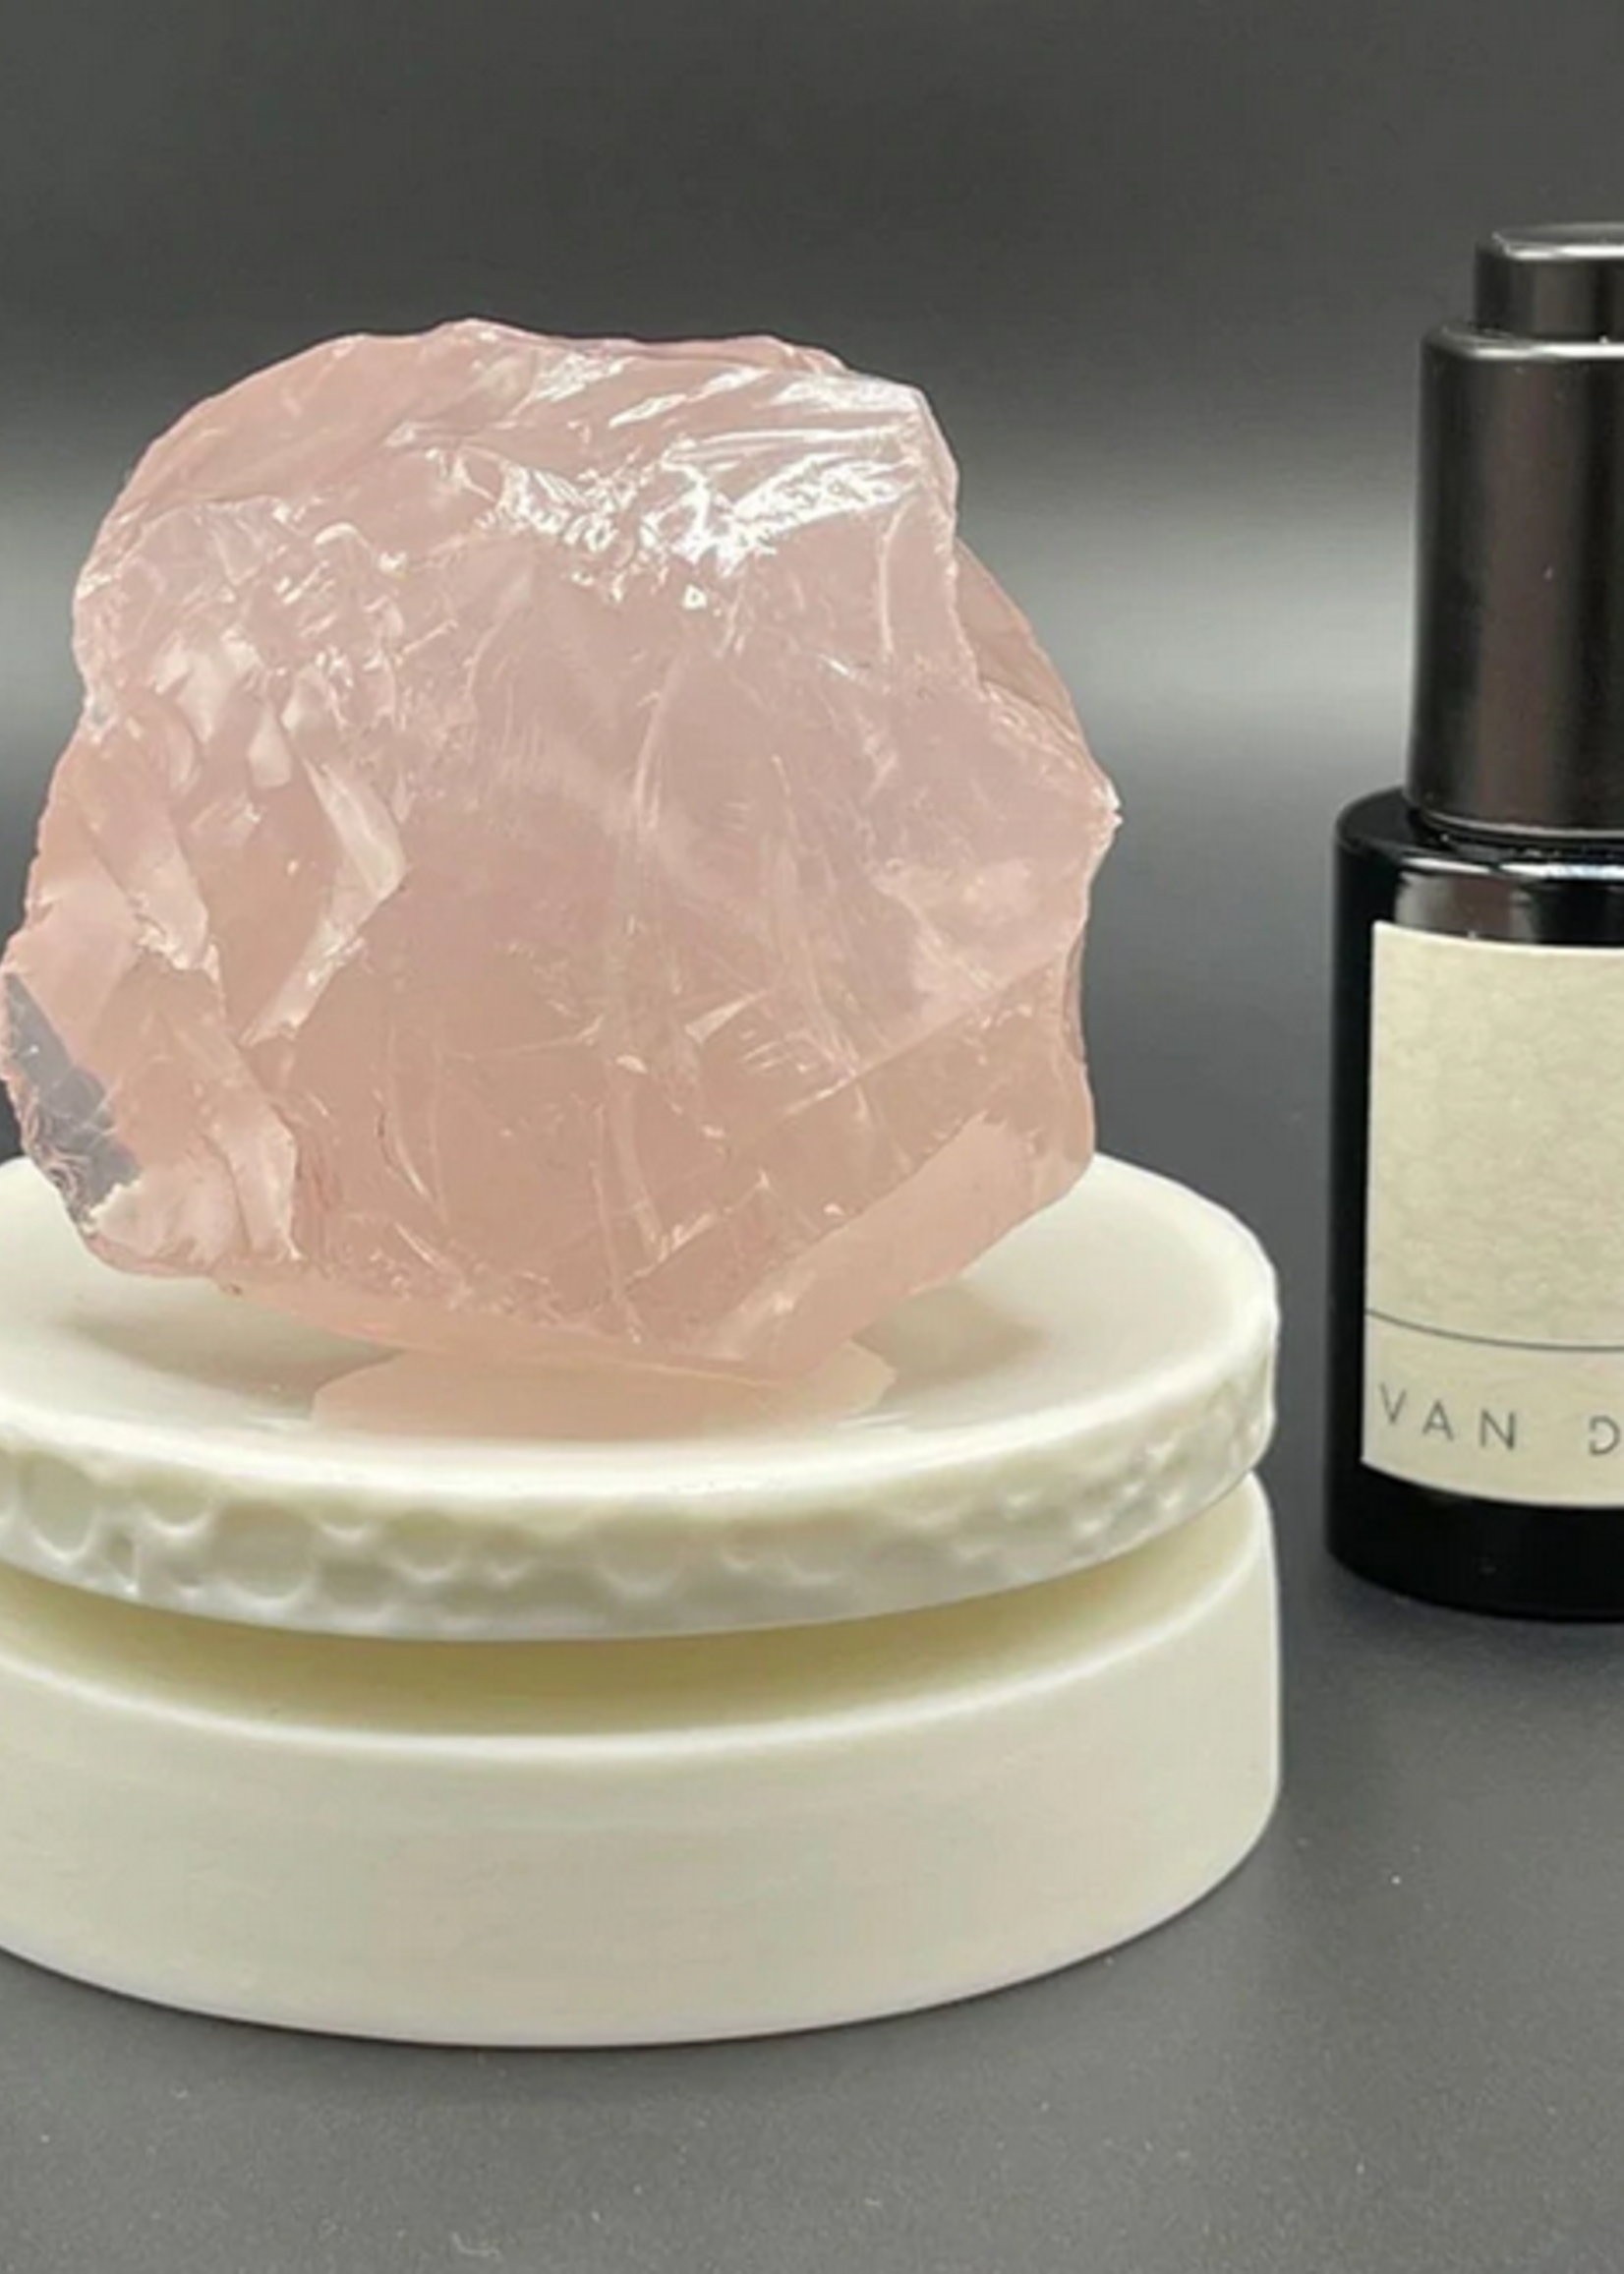 VAN DANG Fragrances The Crystal Meditation Set